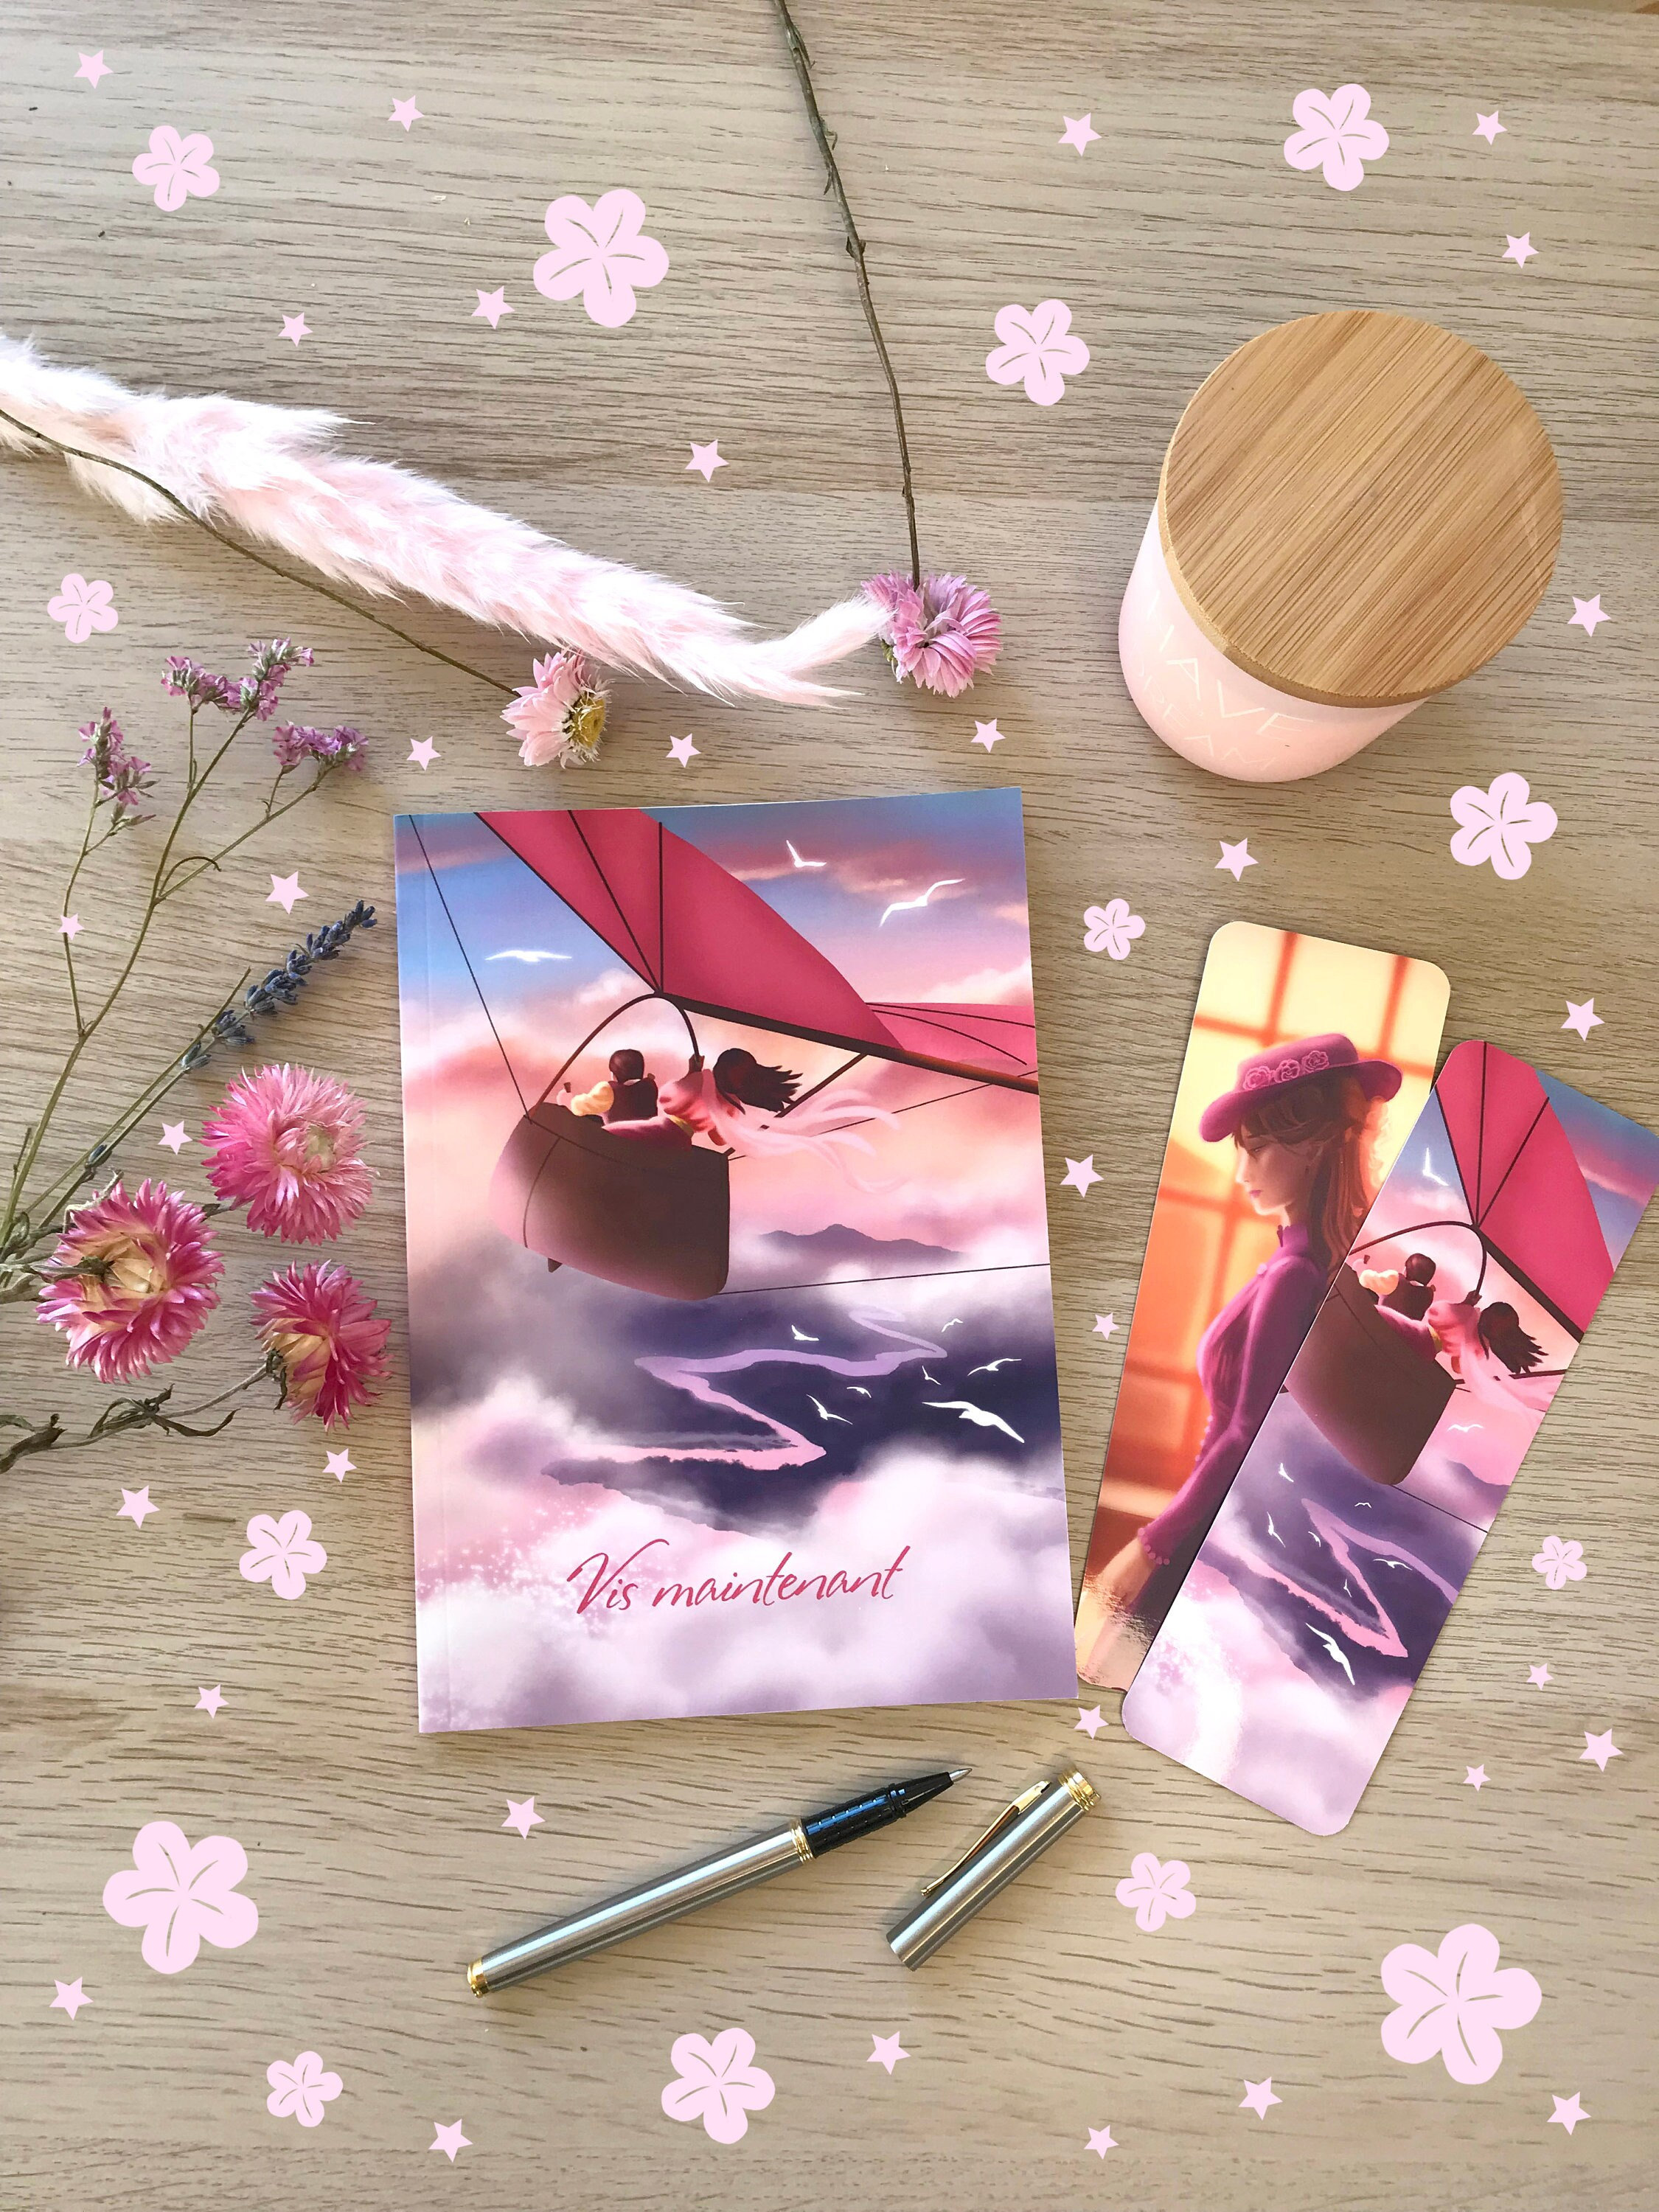 Couverture de livre en tissu à imprimé Floral pour adulte et adolescent,  format Rosa A5 et A6